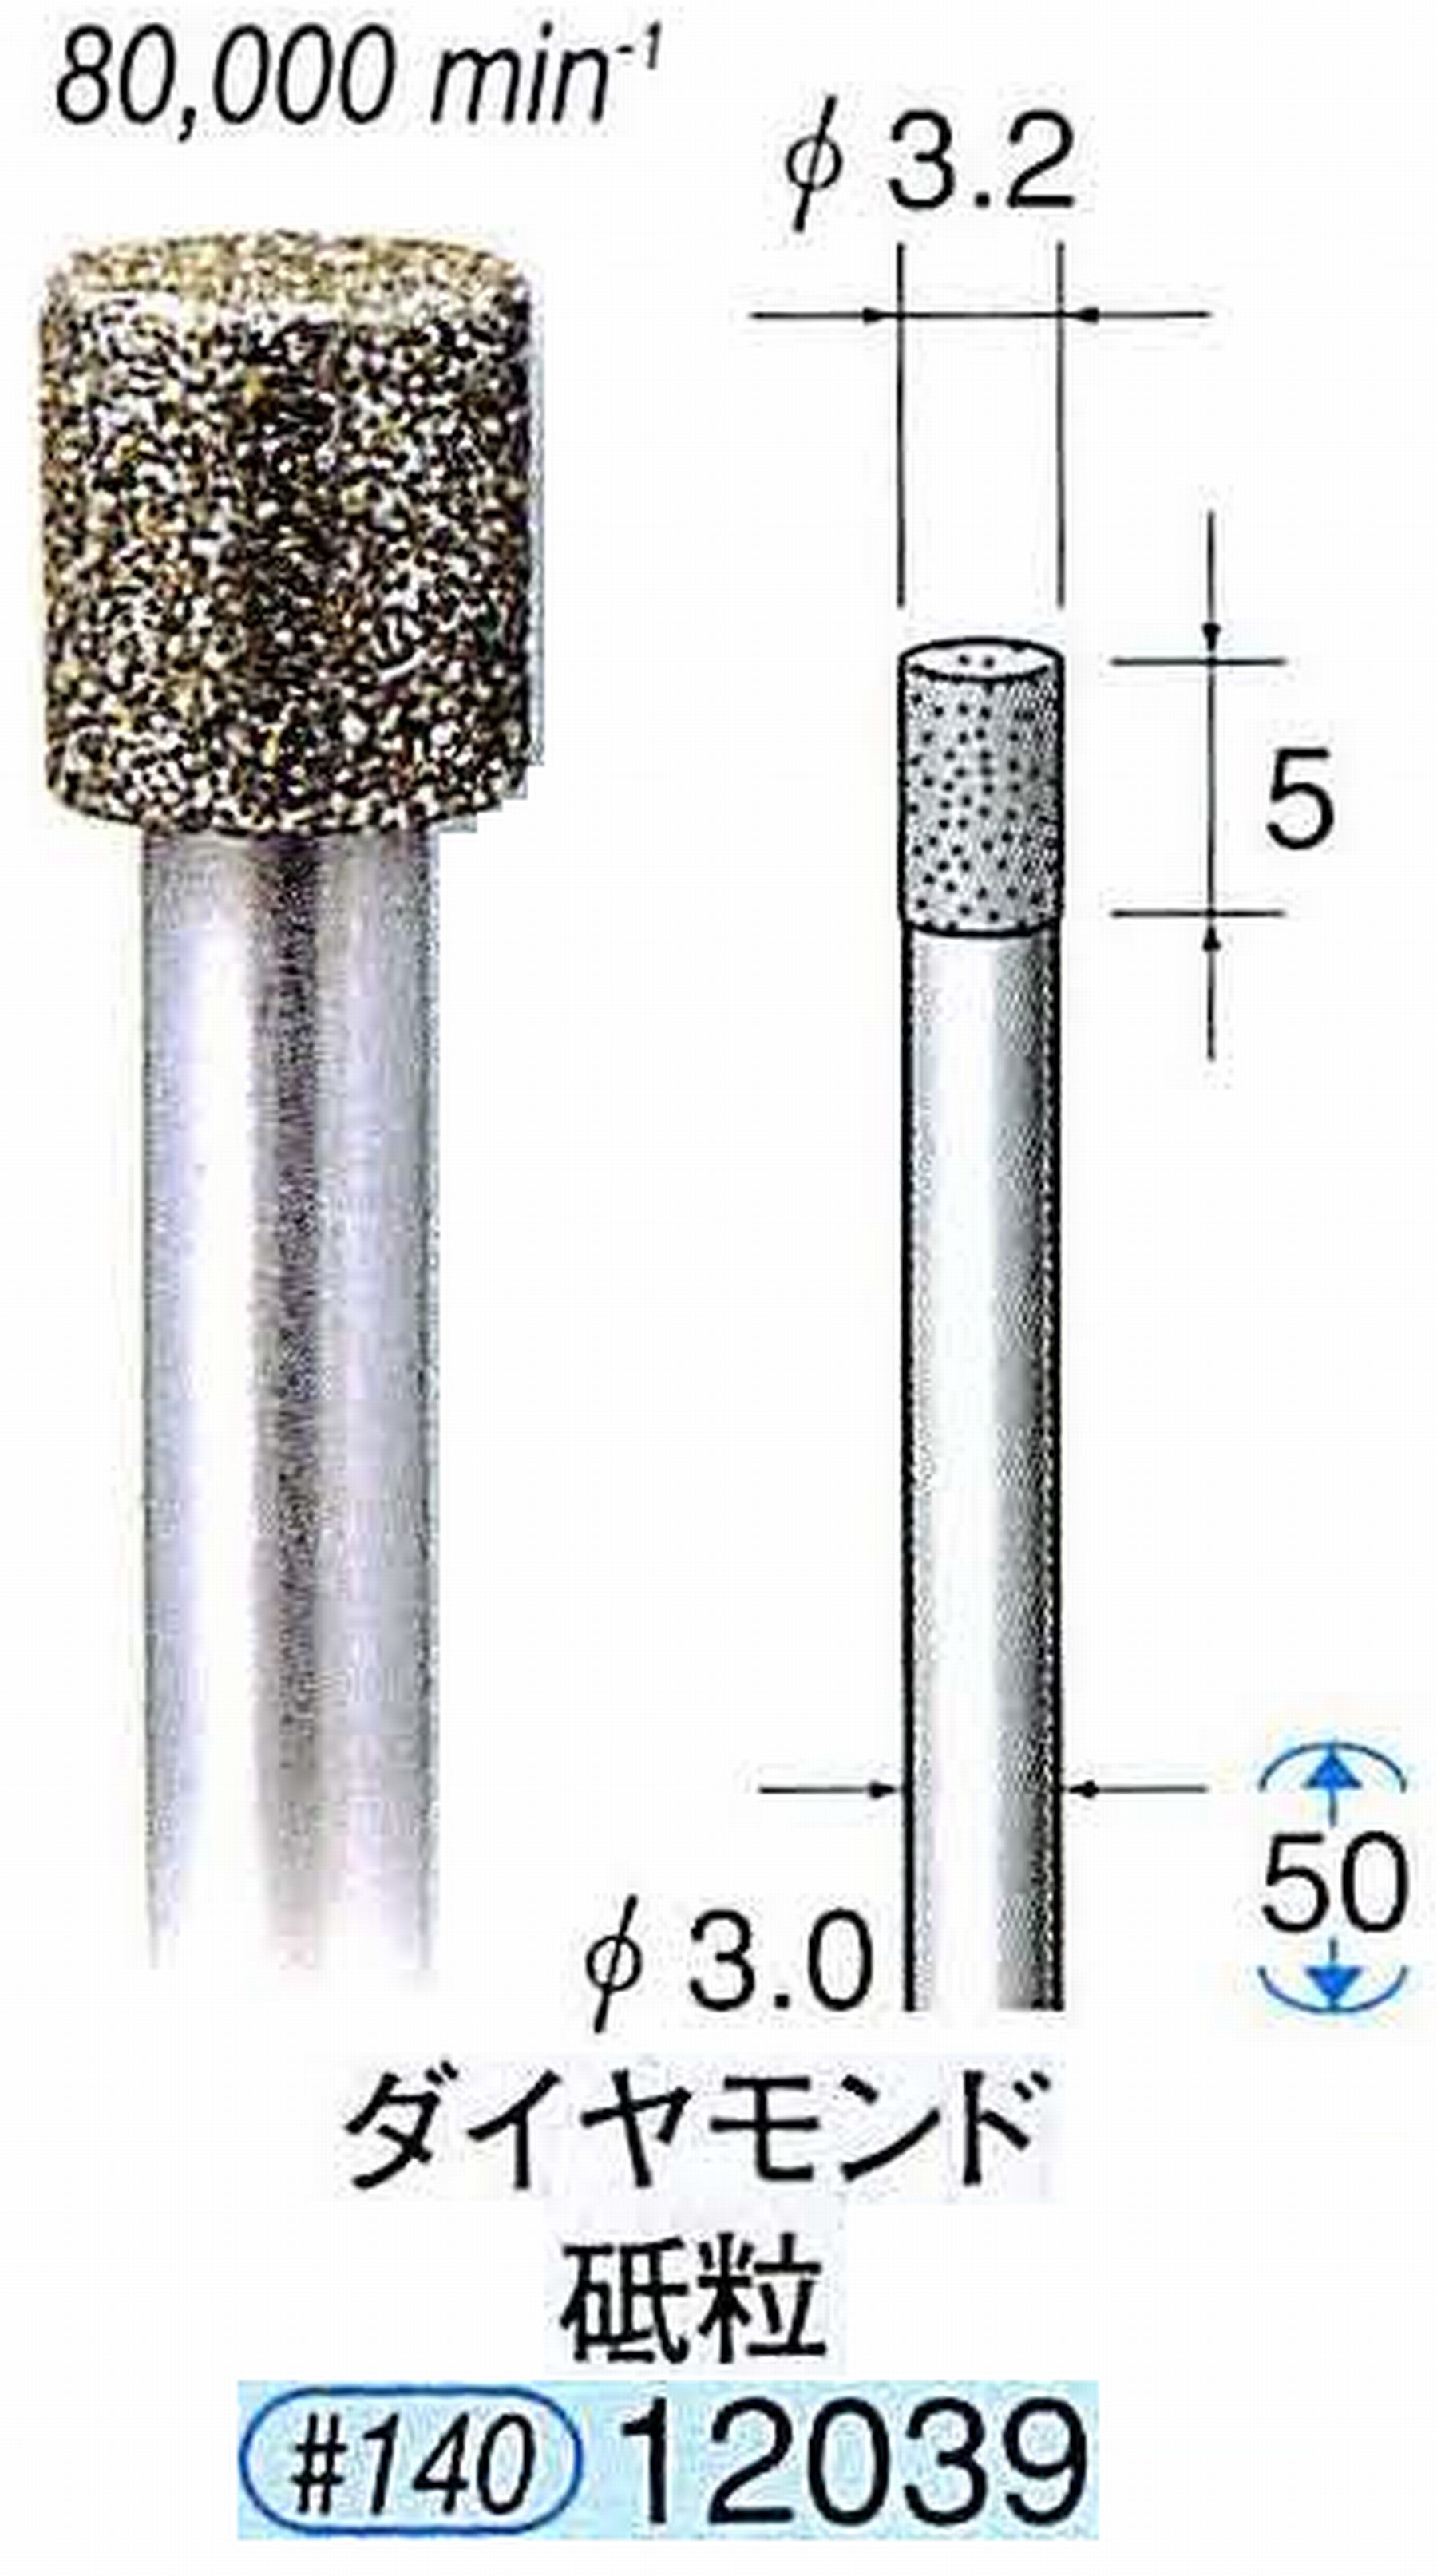 ナカニシ/NAKANISHI 電着ダイヤモンド ダイヤモンド砥粒 軸径(シャンク)φ3.0mm 12039